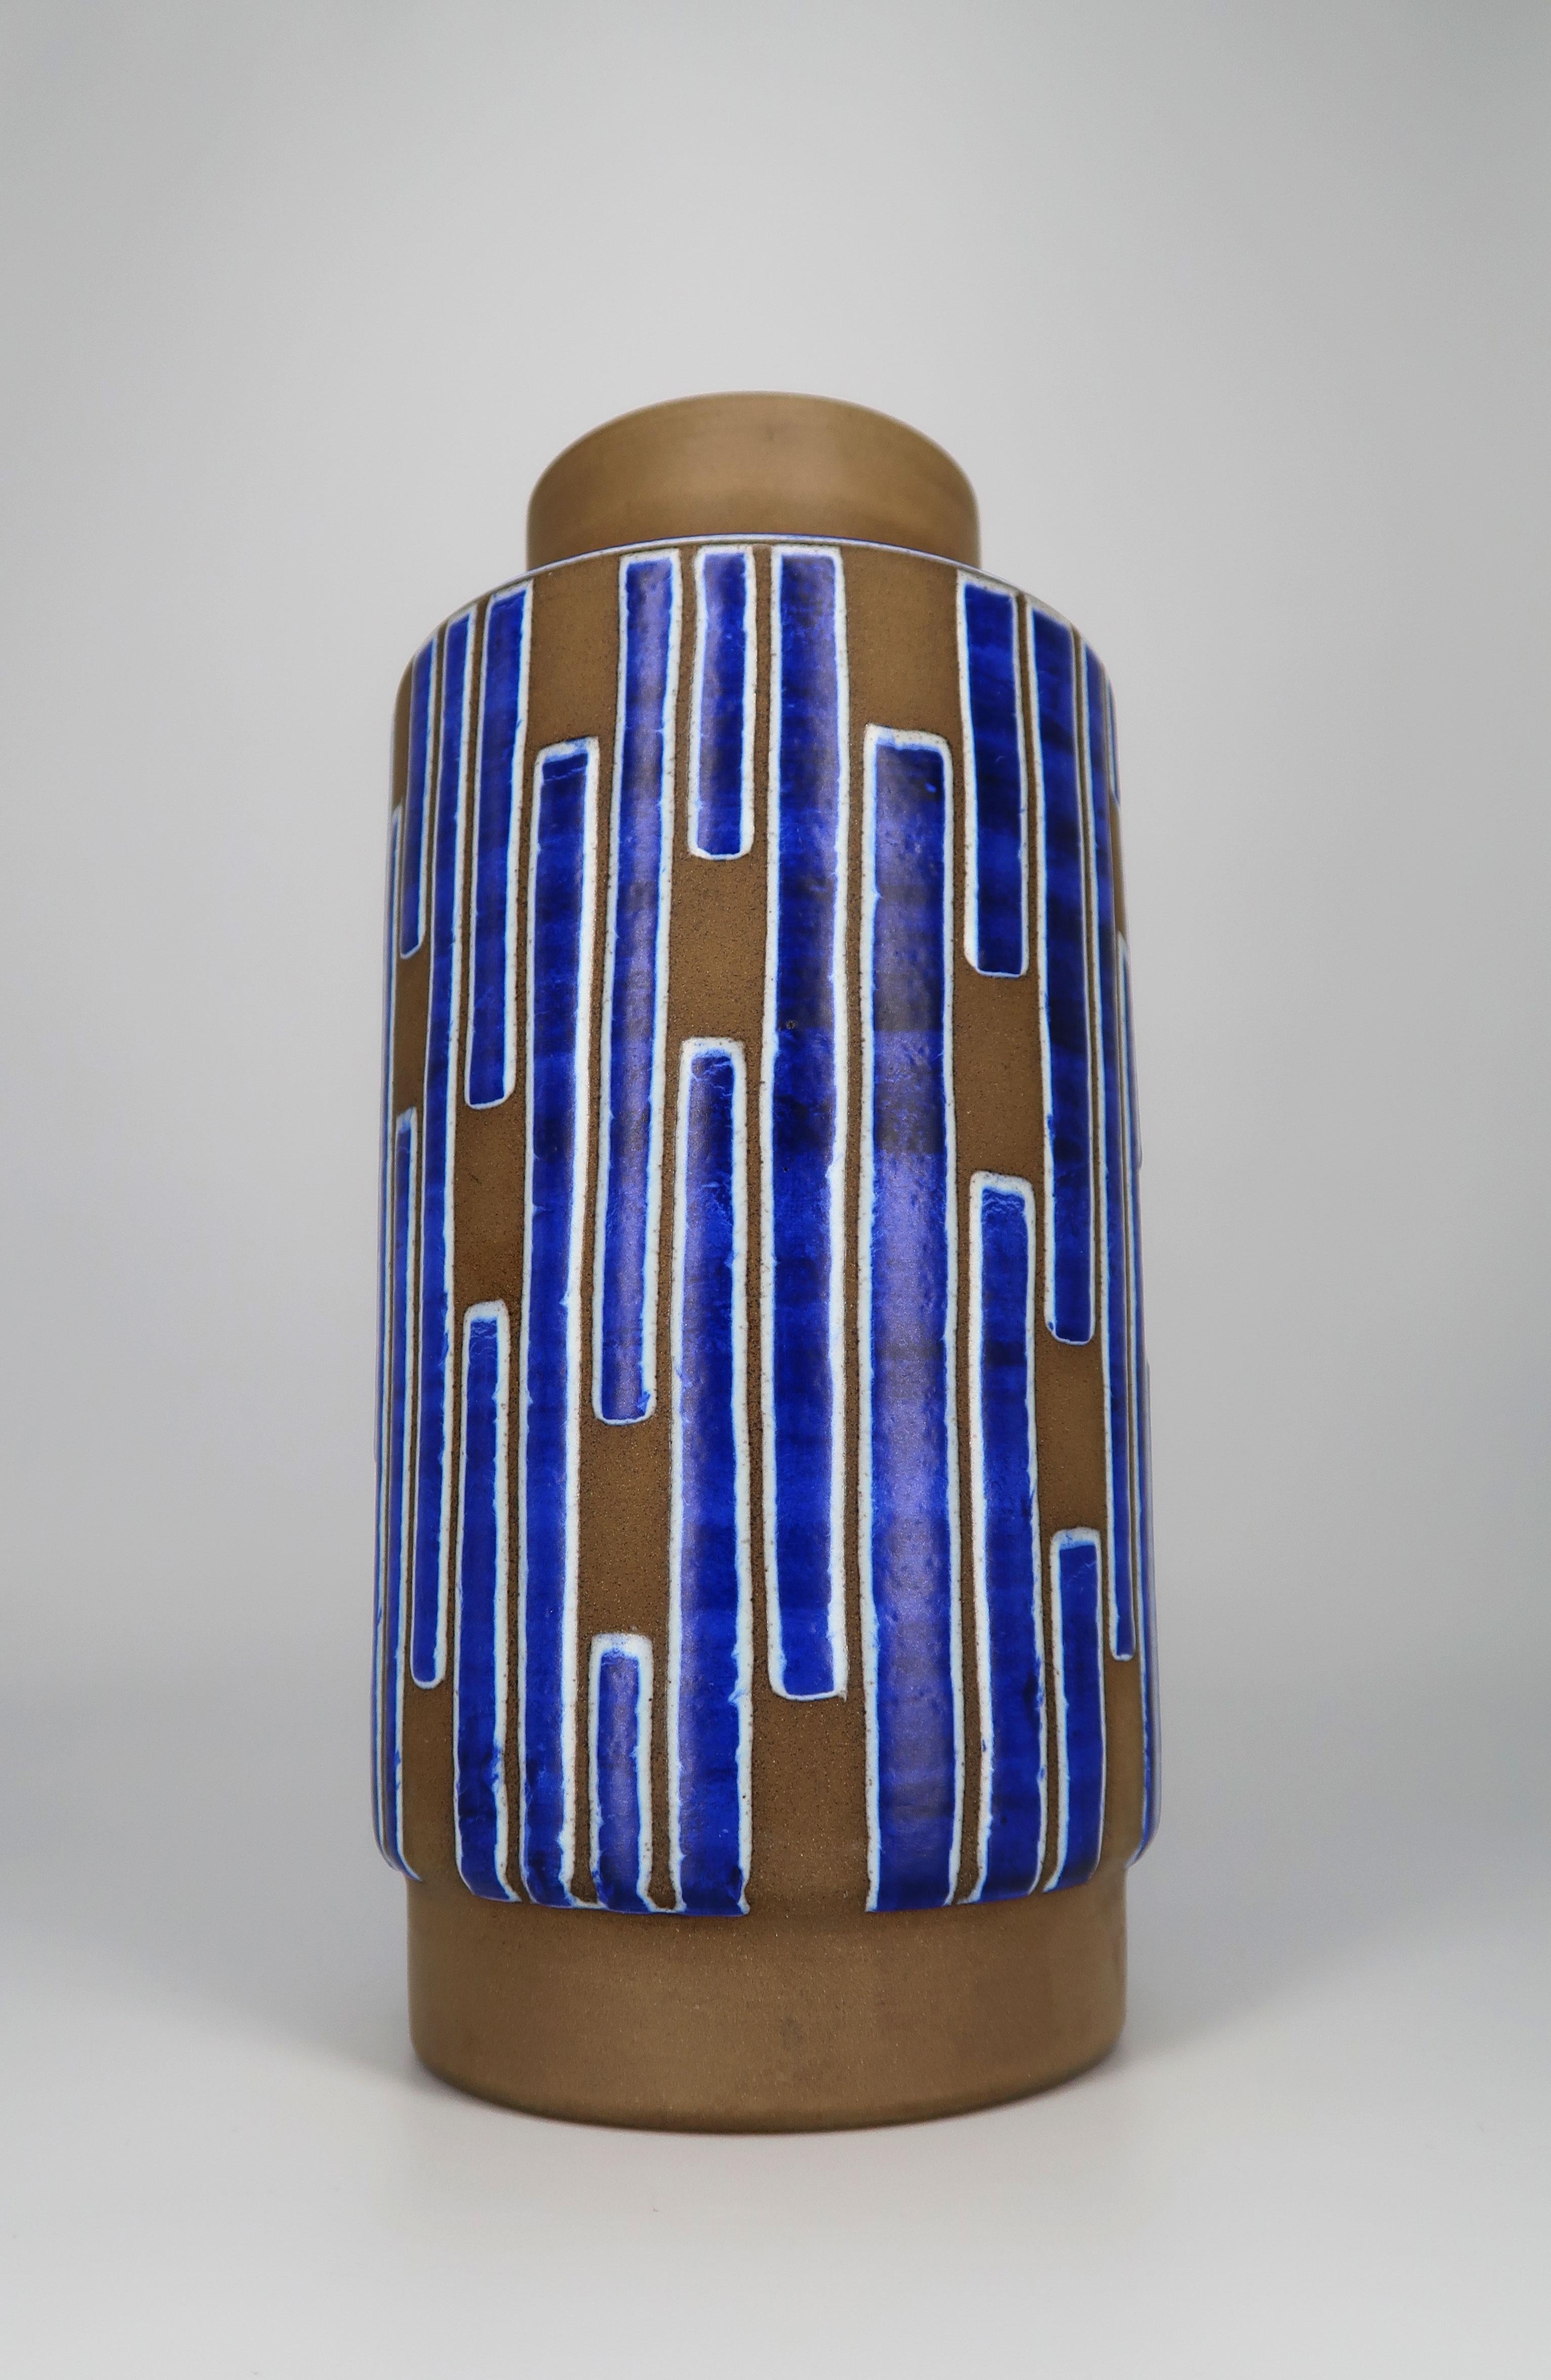 Magnifique vase danois décoré à la main en bleu cobalt lustré, blanc craie et céramique brute, datant des années 1960. Fabriqué en Nouvelle-Zélande par Schollert Keramik. Épaisses rayures asymétriques bleu cobalt brillant avec un contour blanc sur